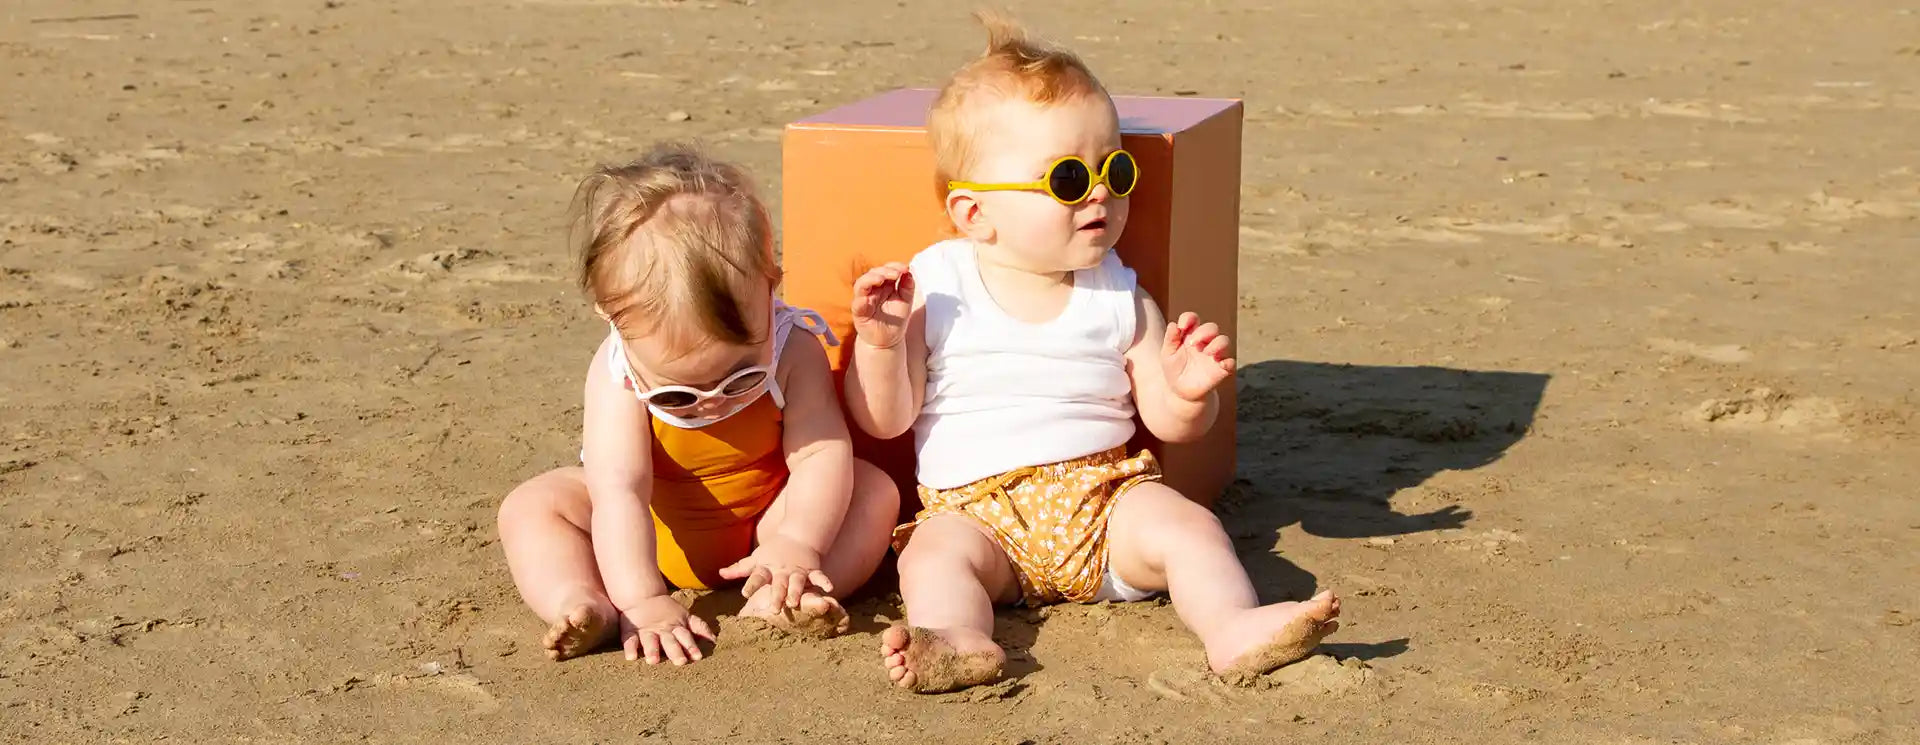 Enfants portant lunettes soleil DIABOLA